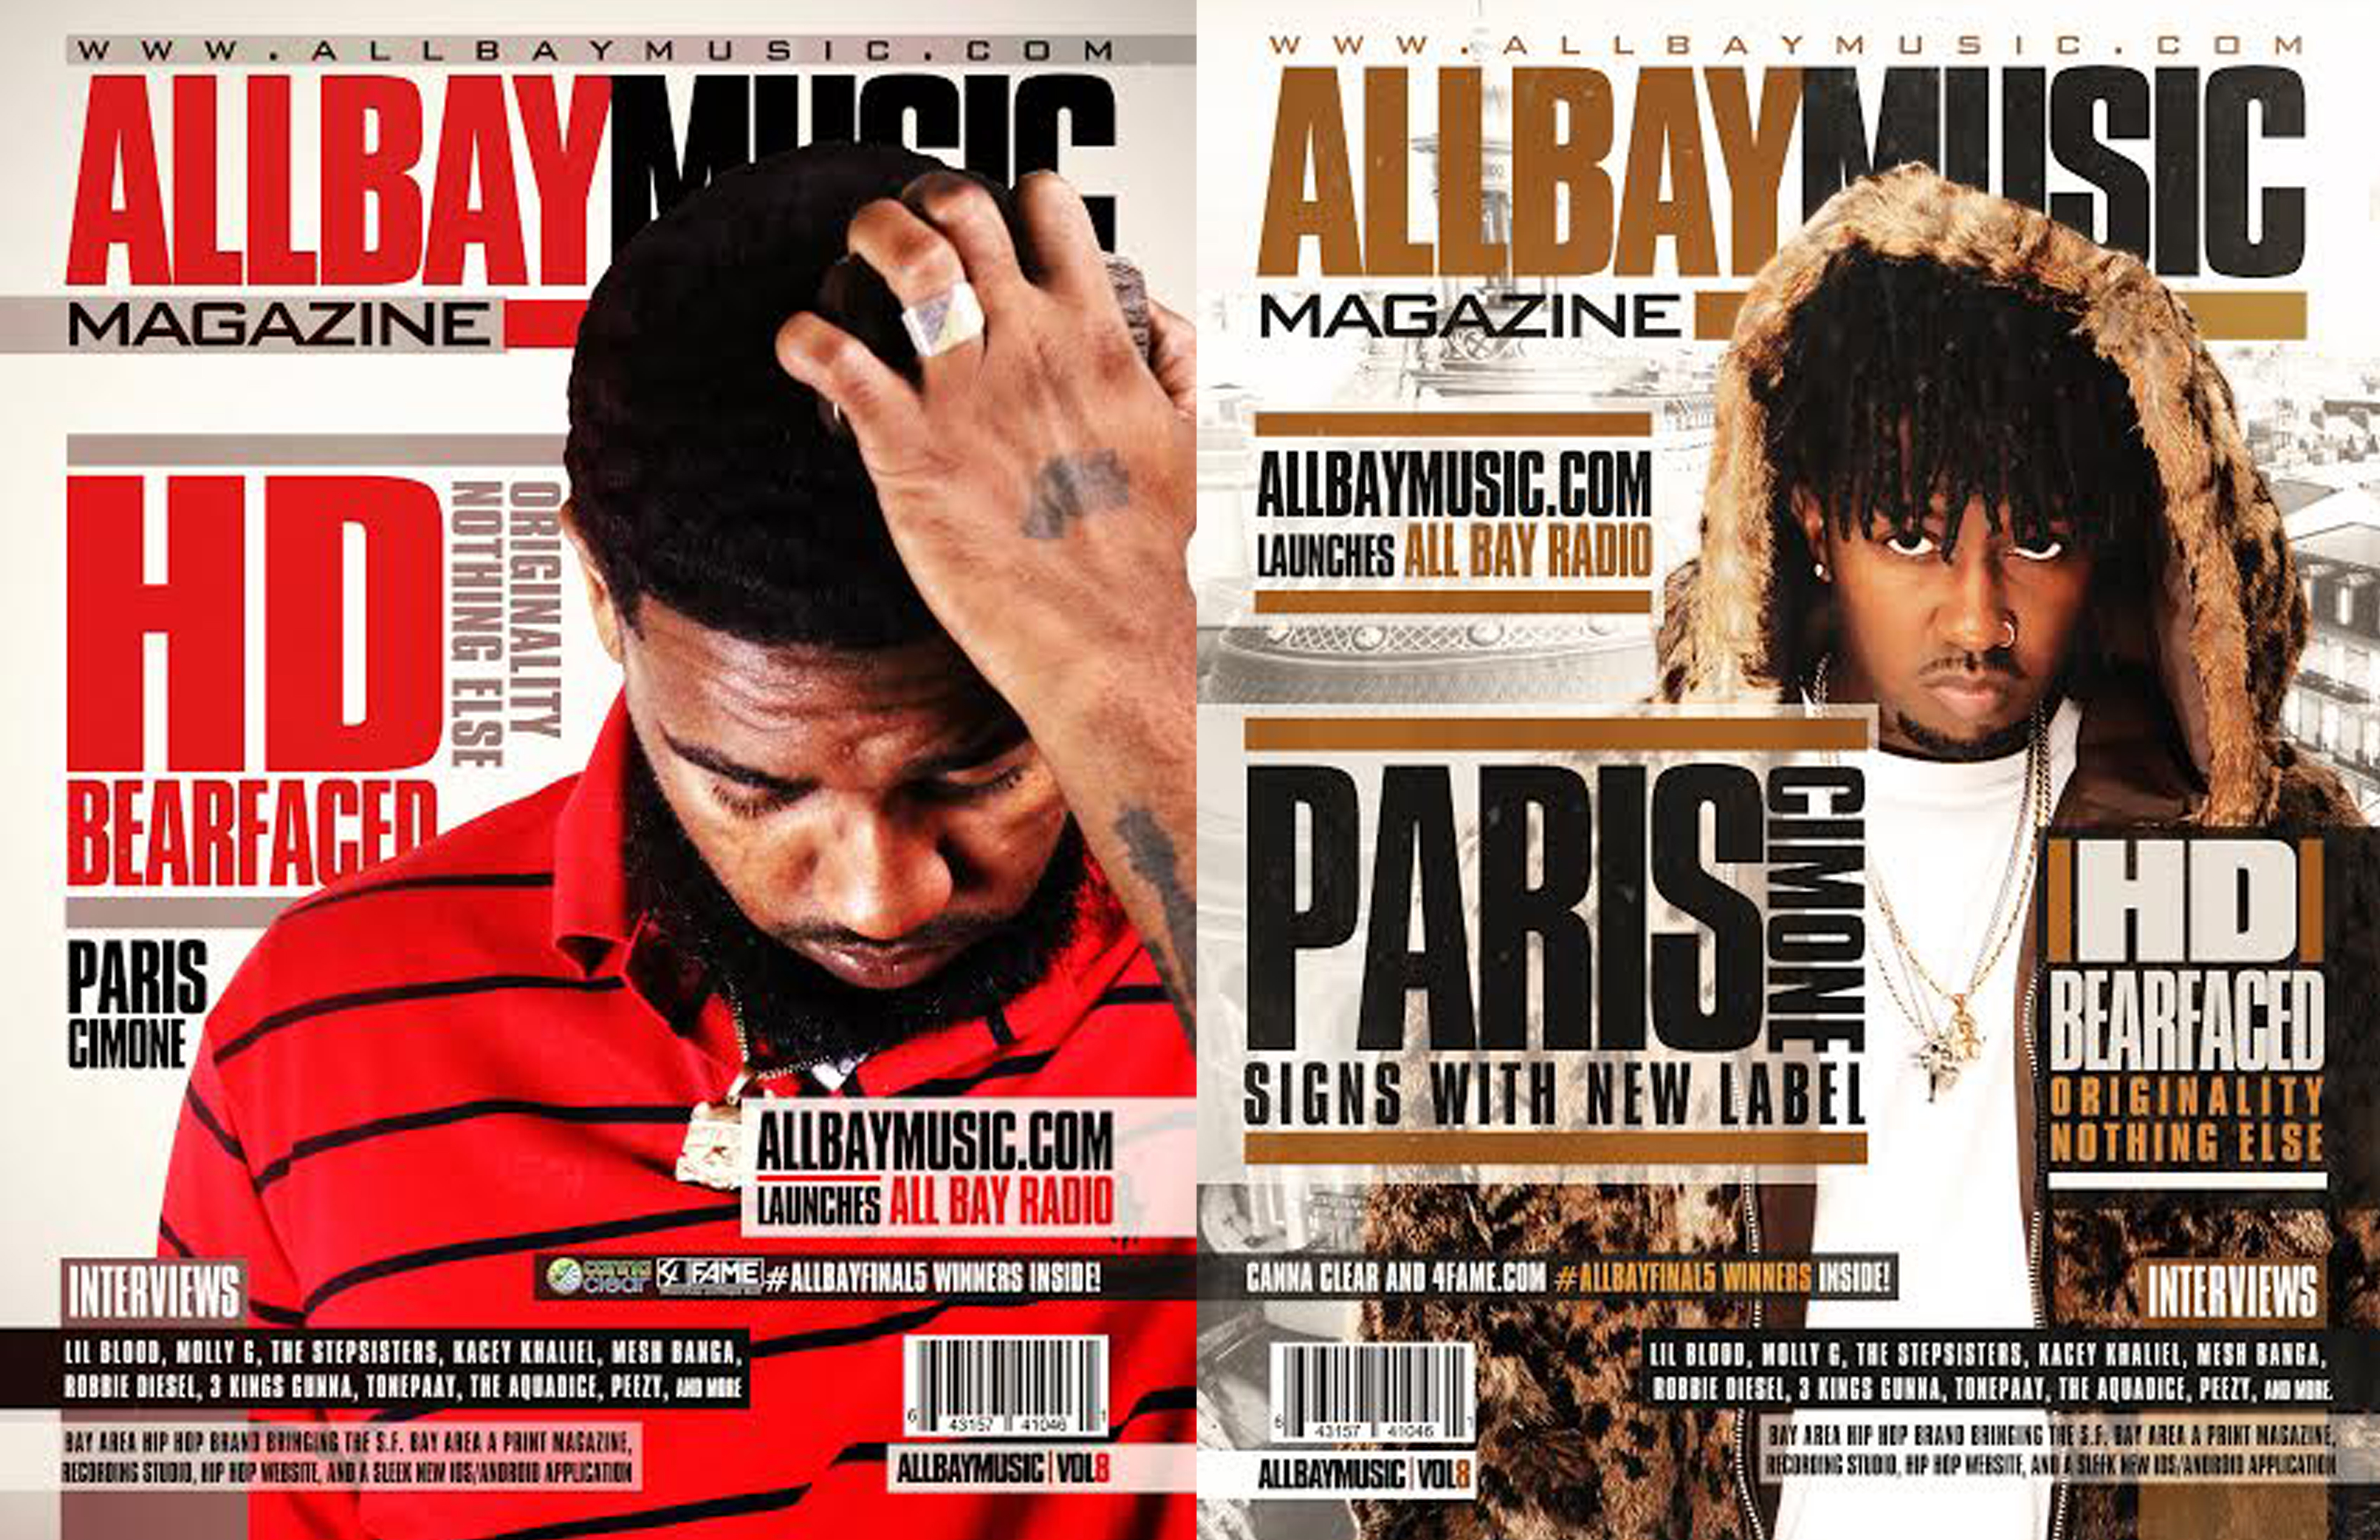 all-bay-music-issue-8-hd-paris-cimone